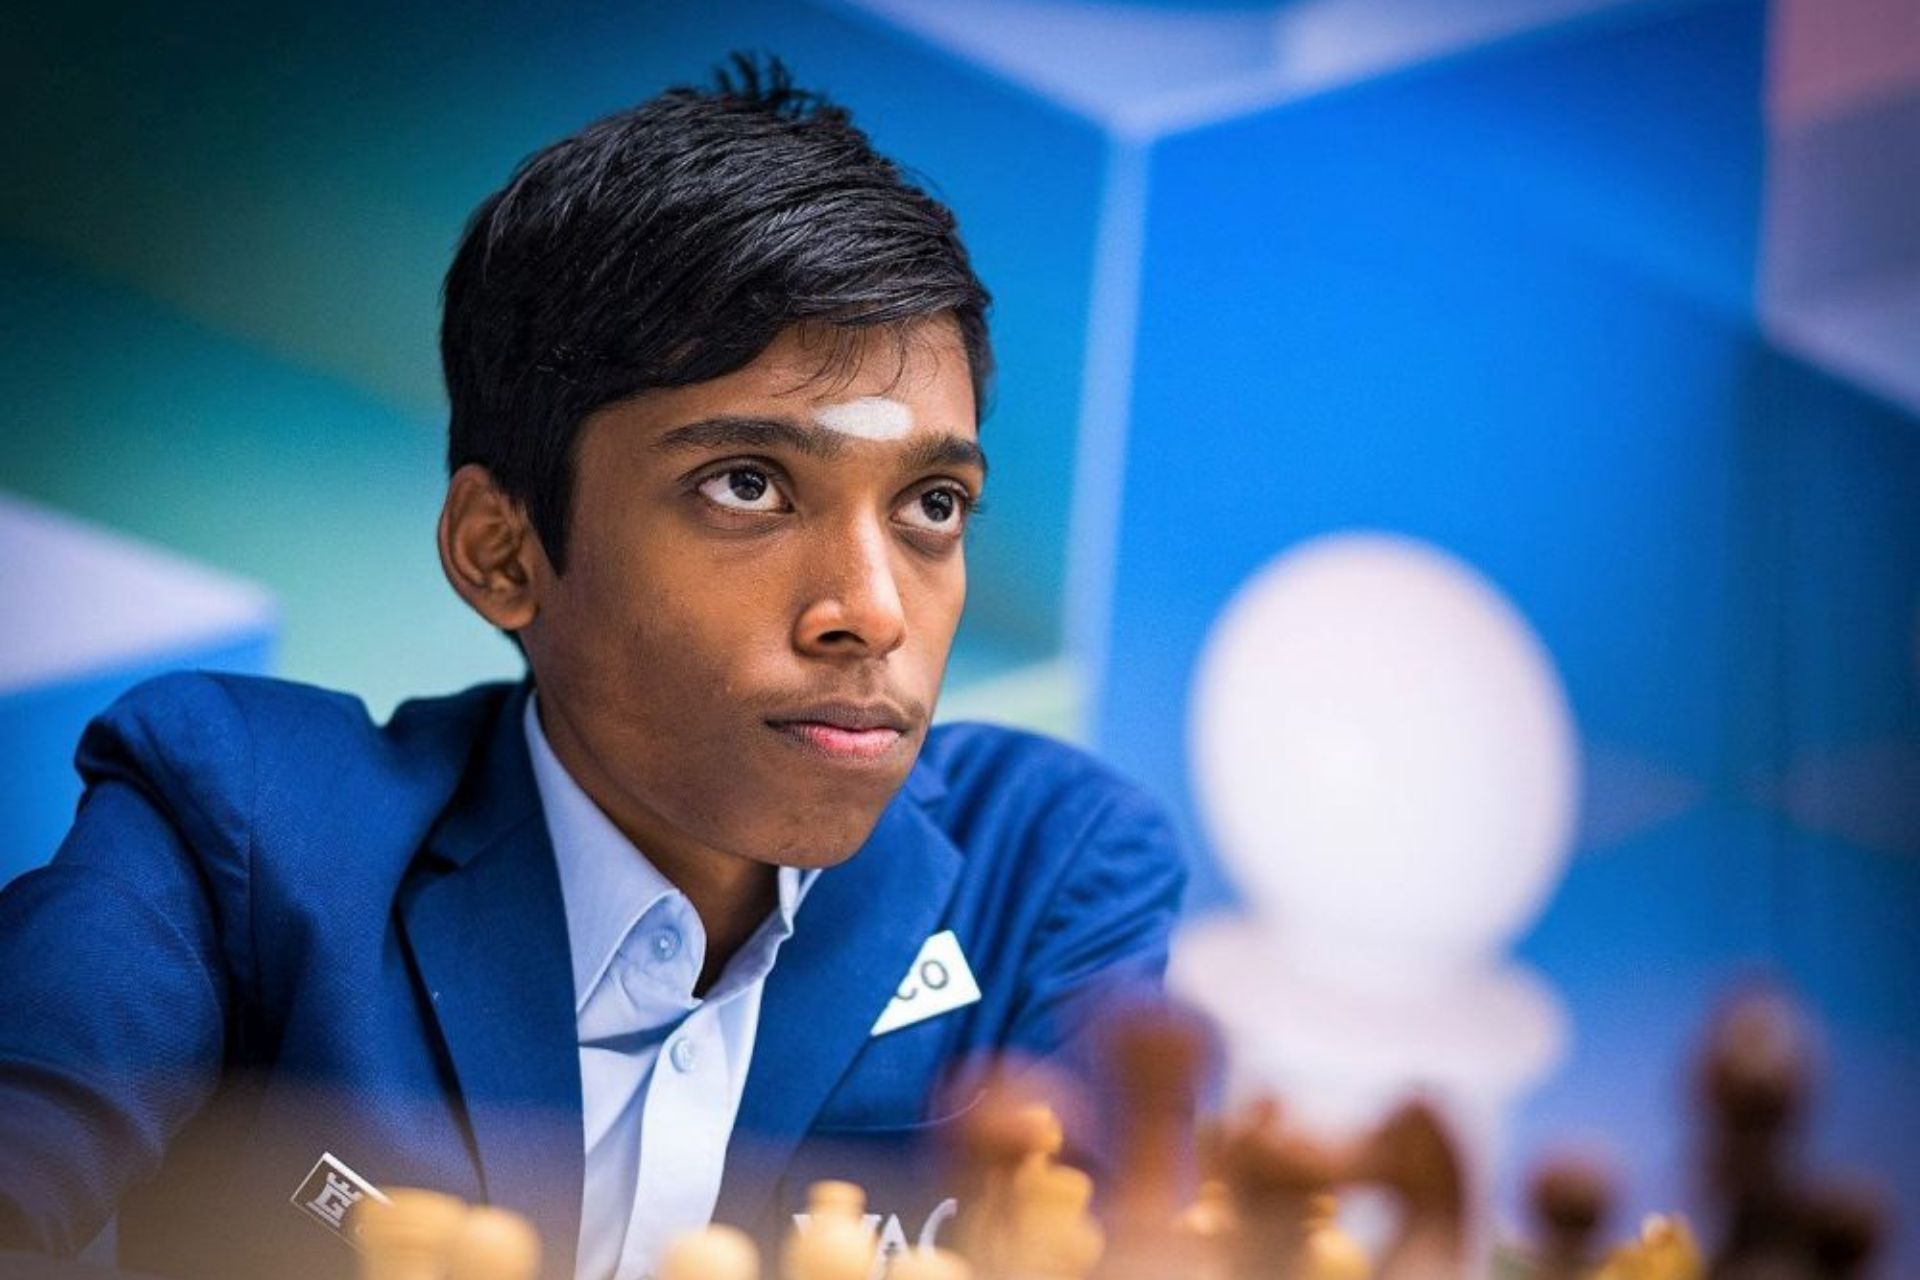 Krishnan Sasikiran, Indian Chess Player